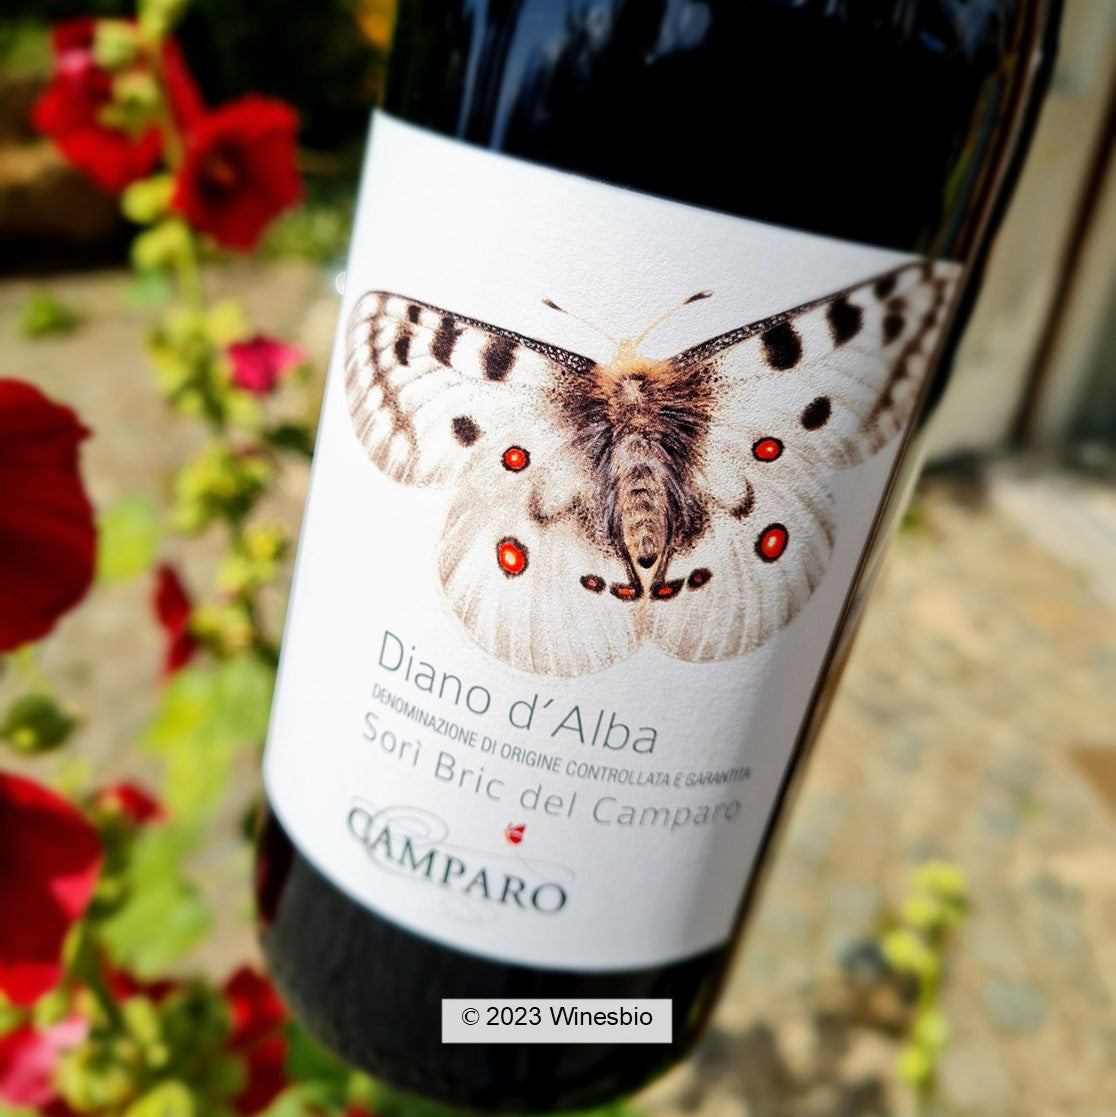 winesbio d\'Alba Camparo Dolcetto red wine Winesbio — Bric Diano Sorì di 2020